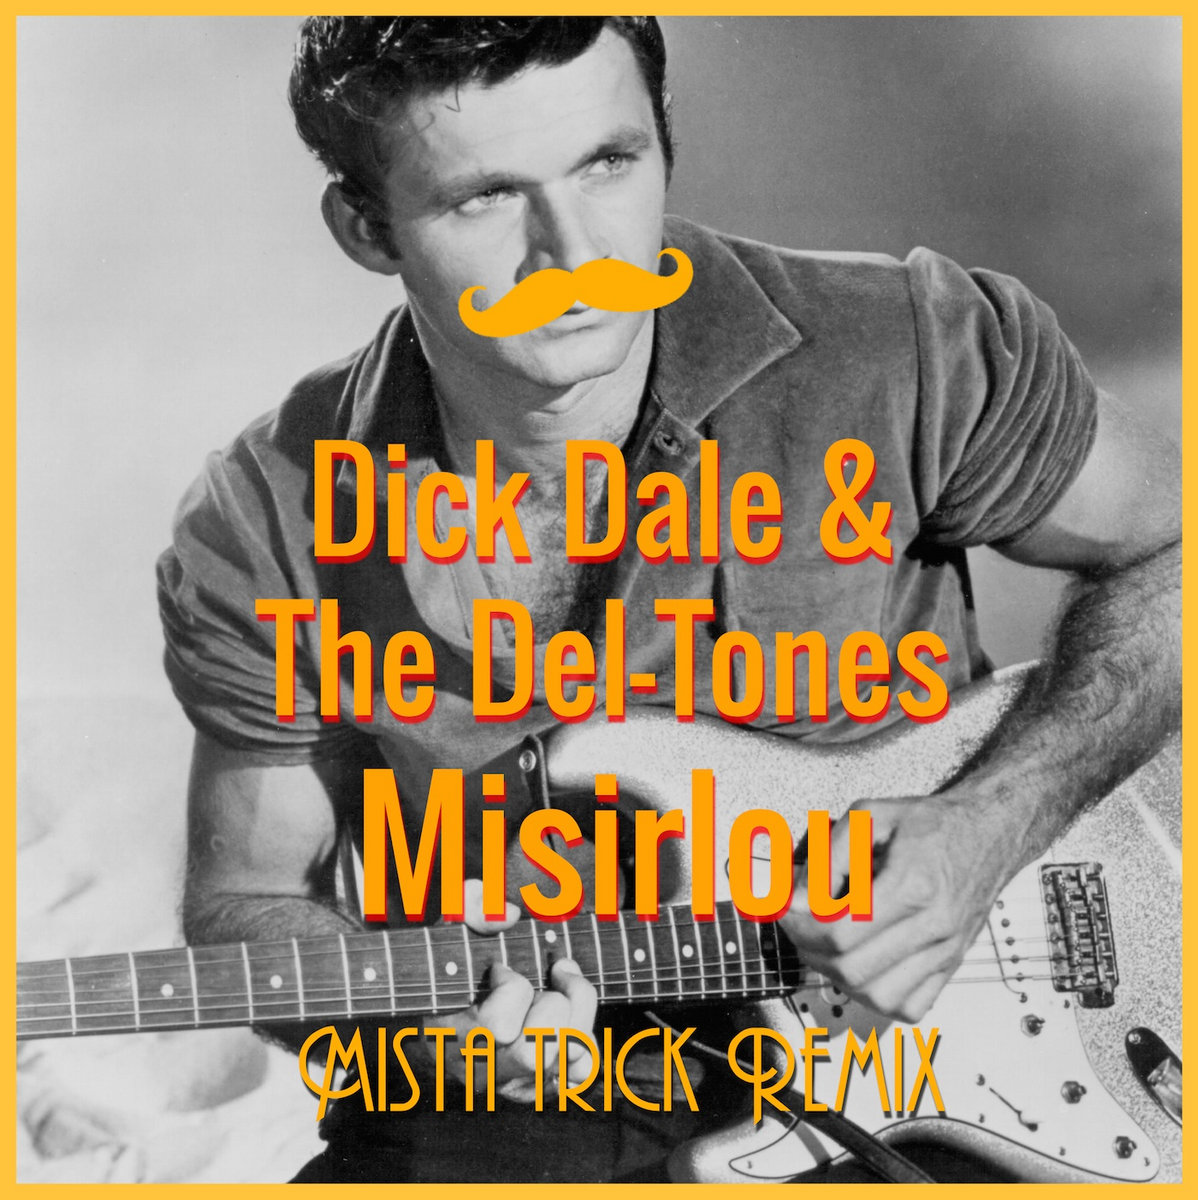 Dick dale misirlou. Misirlou dick Dale. Misirlou dick Dale & his del-Tones. Dick Dale Постер. Dick Dale Misirlou табы.